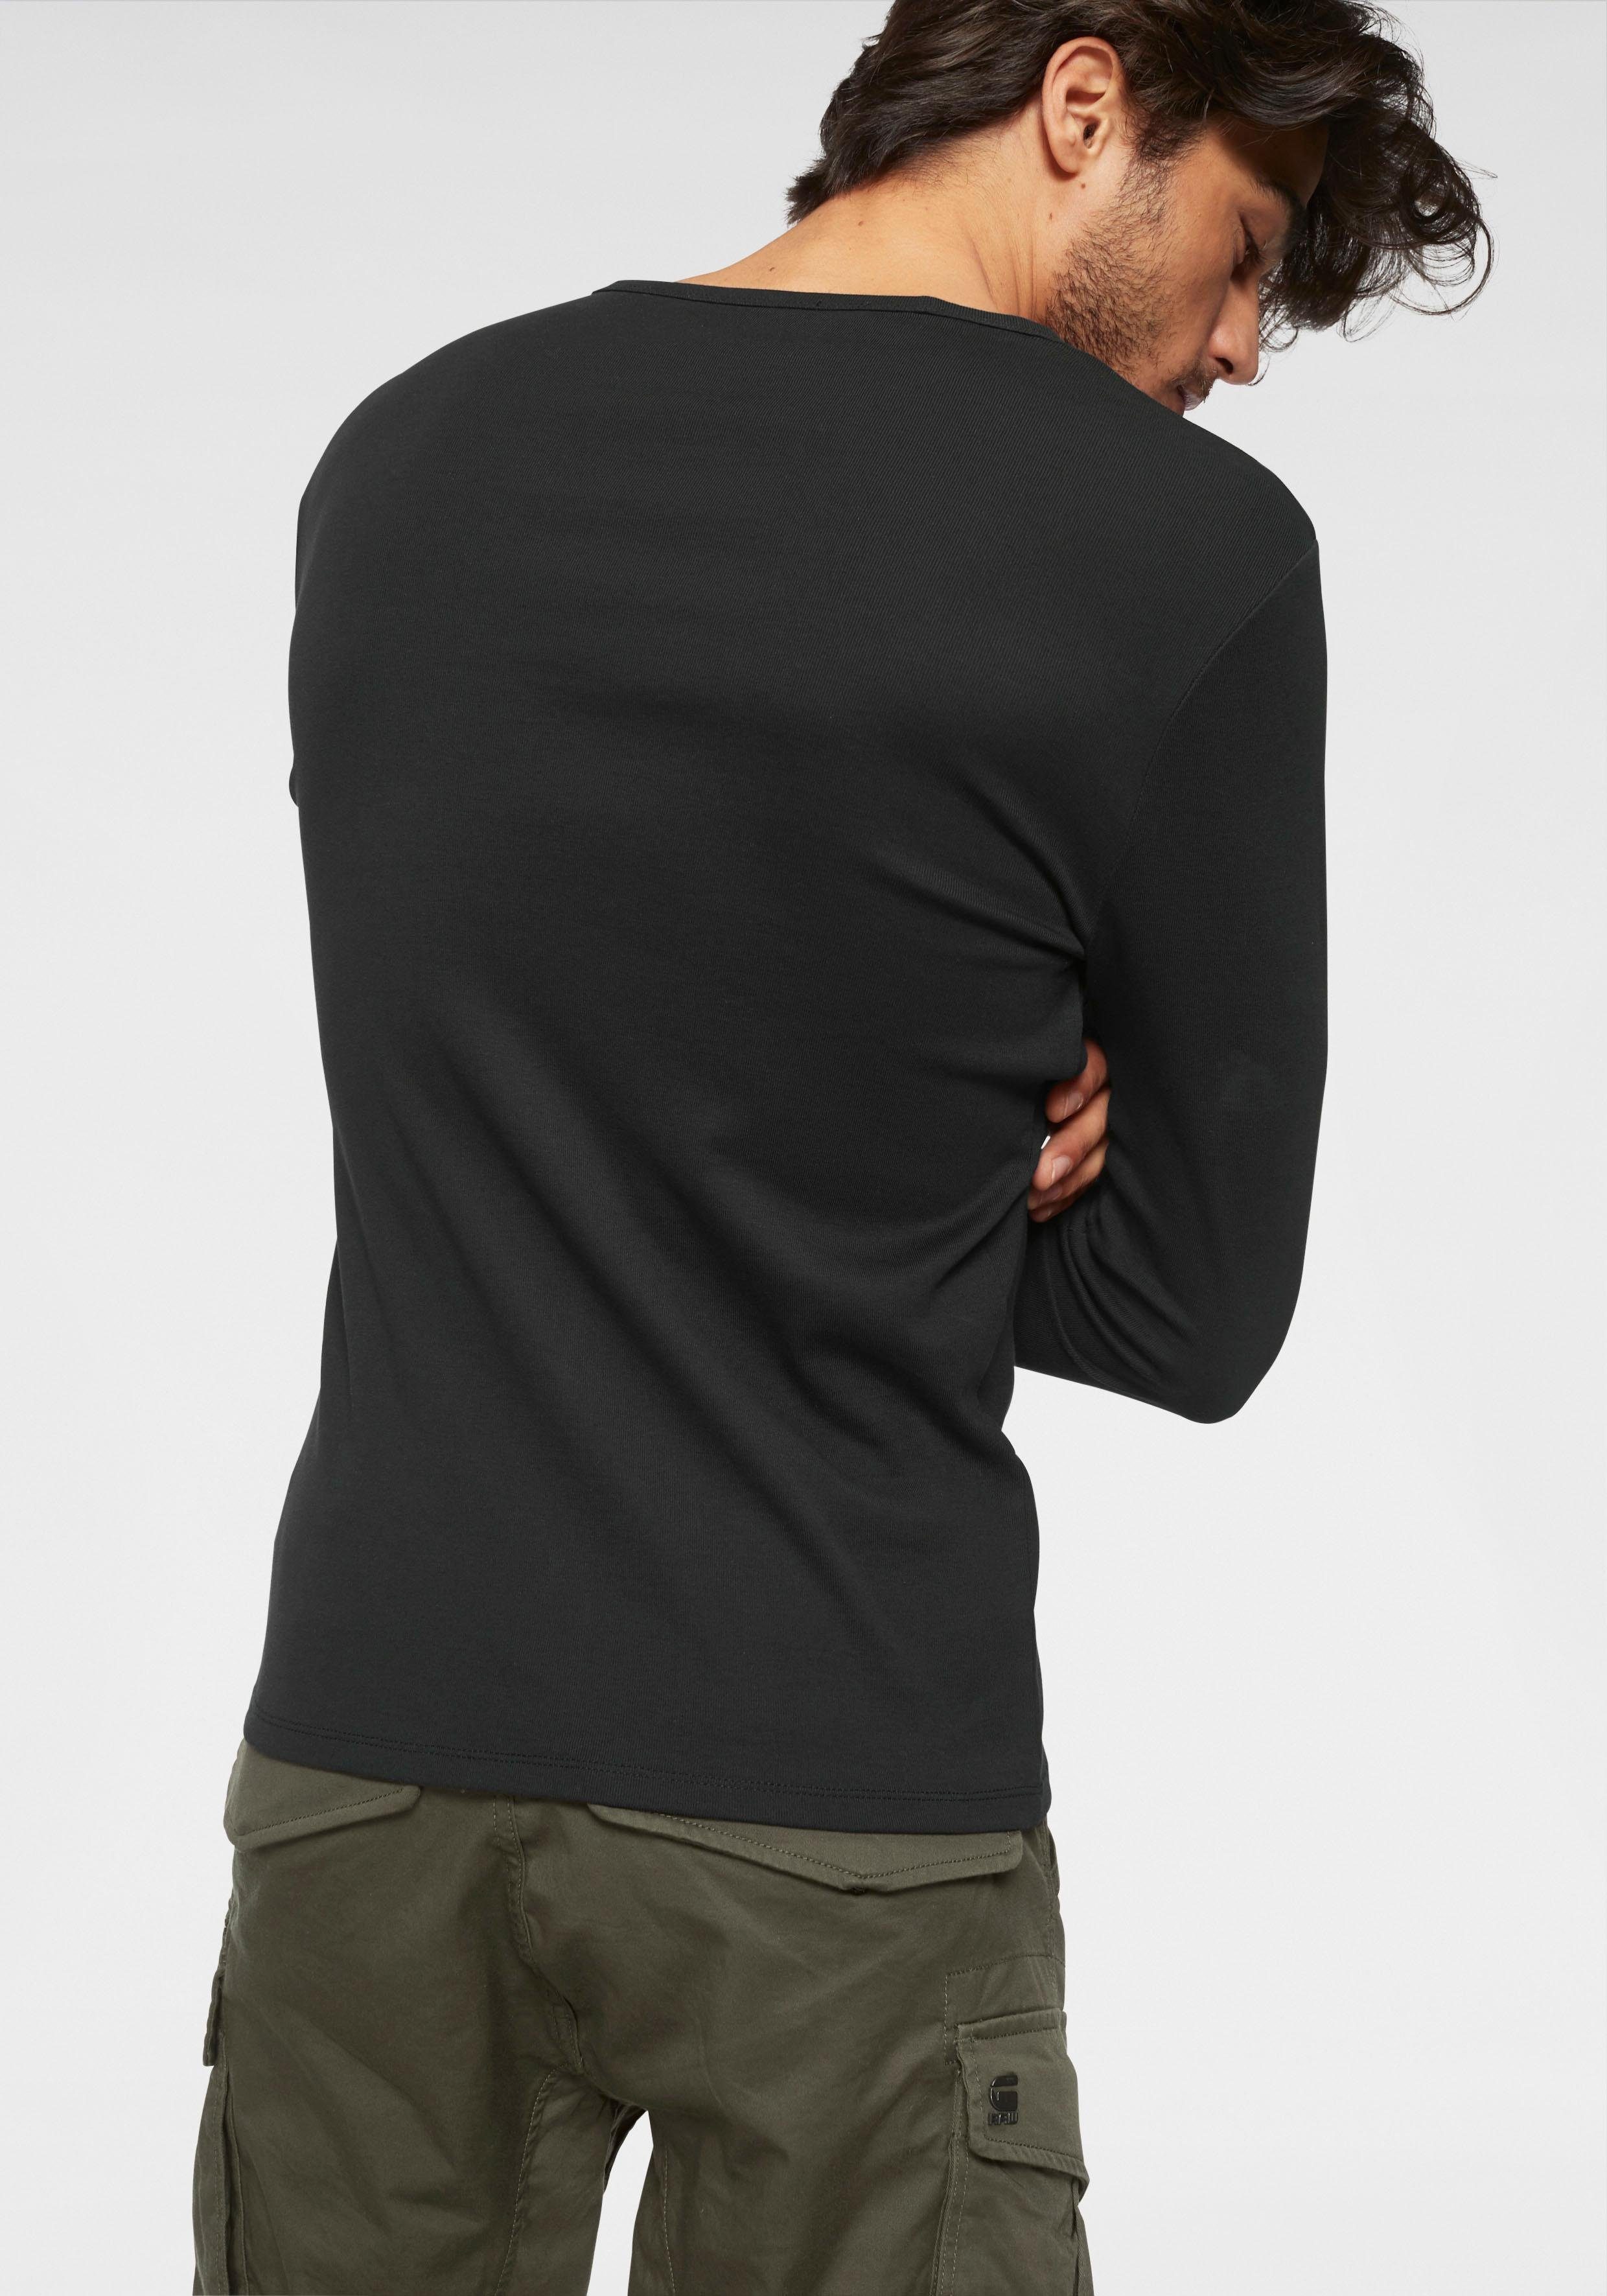 Langarmshirt aus blickdichter, RAW black hochwertiger Basic-Artikel G-Star Baumwollqualität